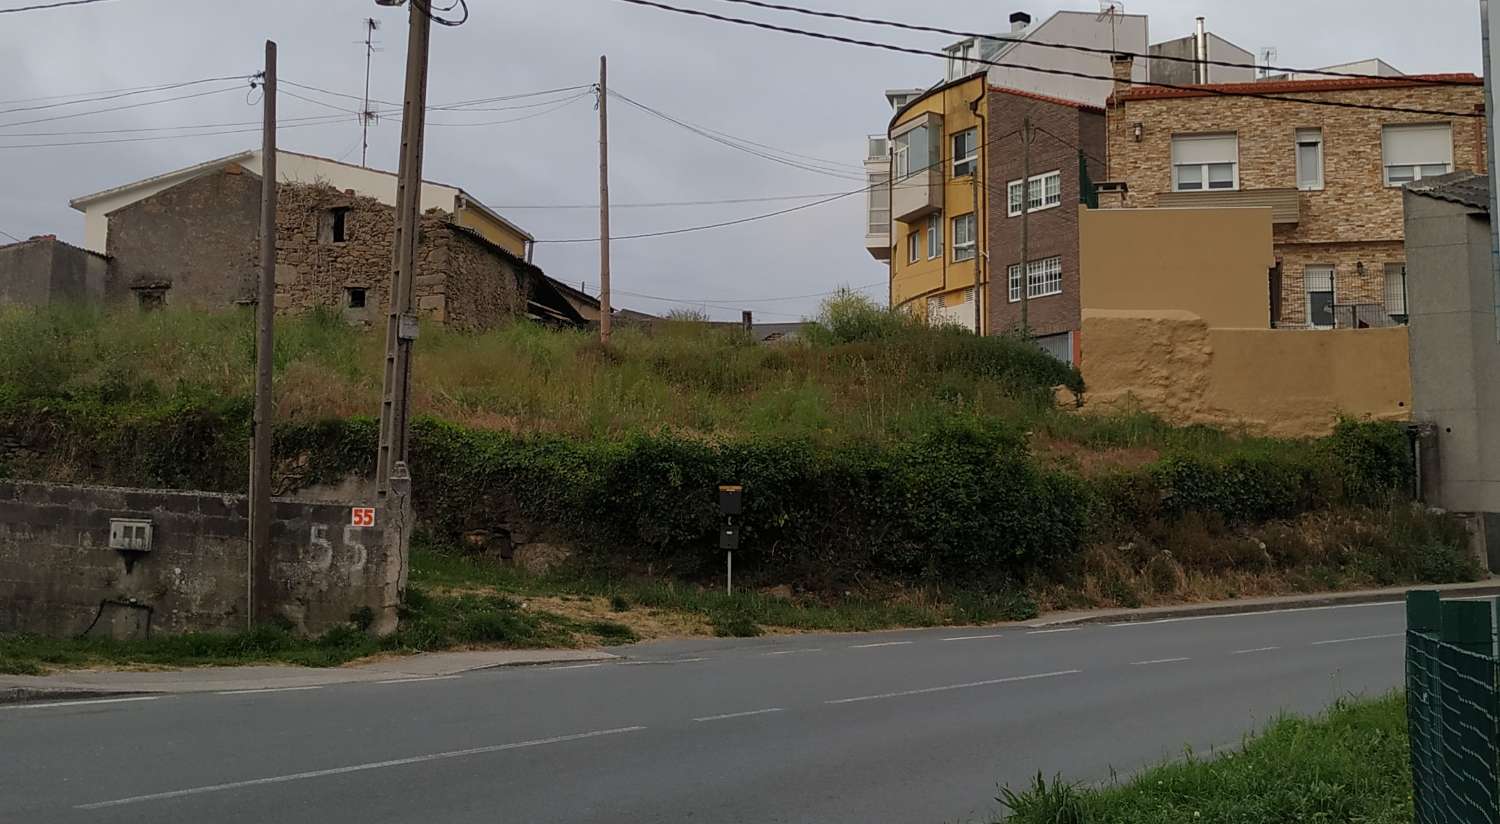 Venta solar urbano en zona el Martinete, en A Coruña